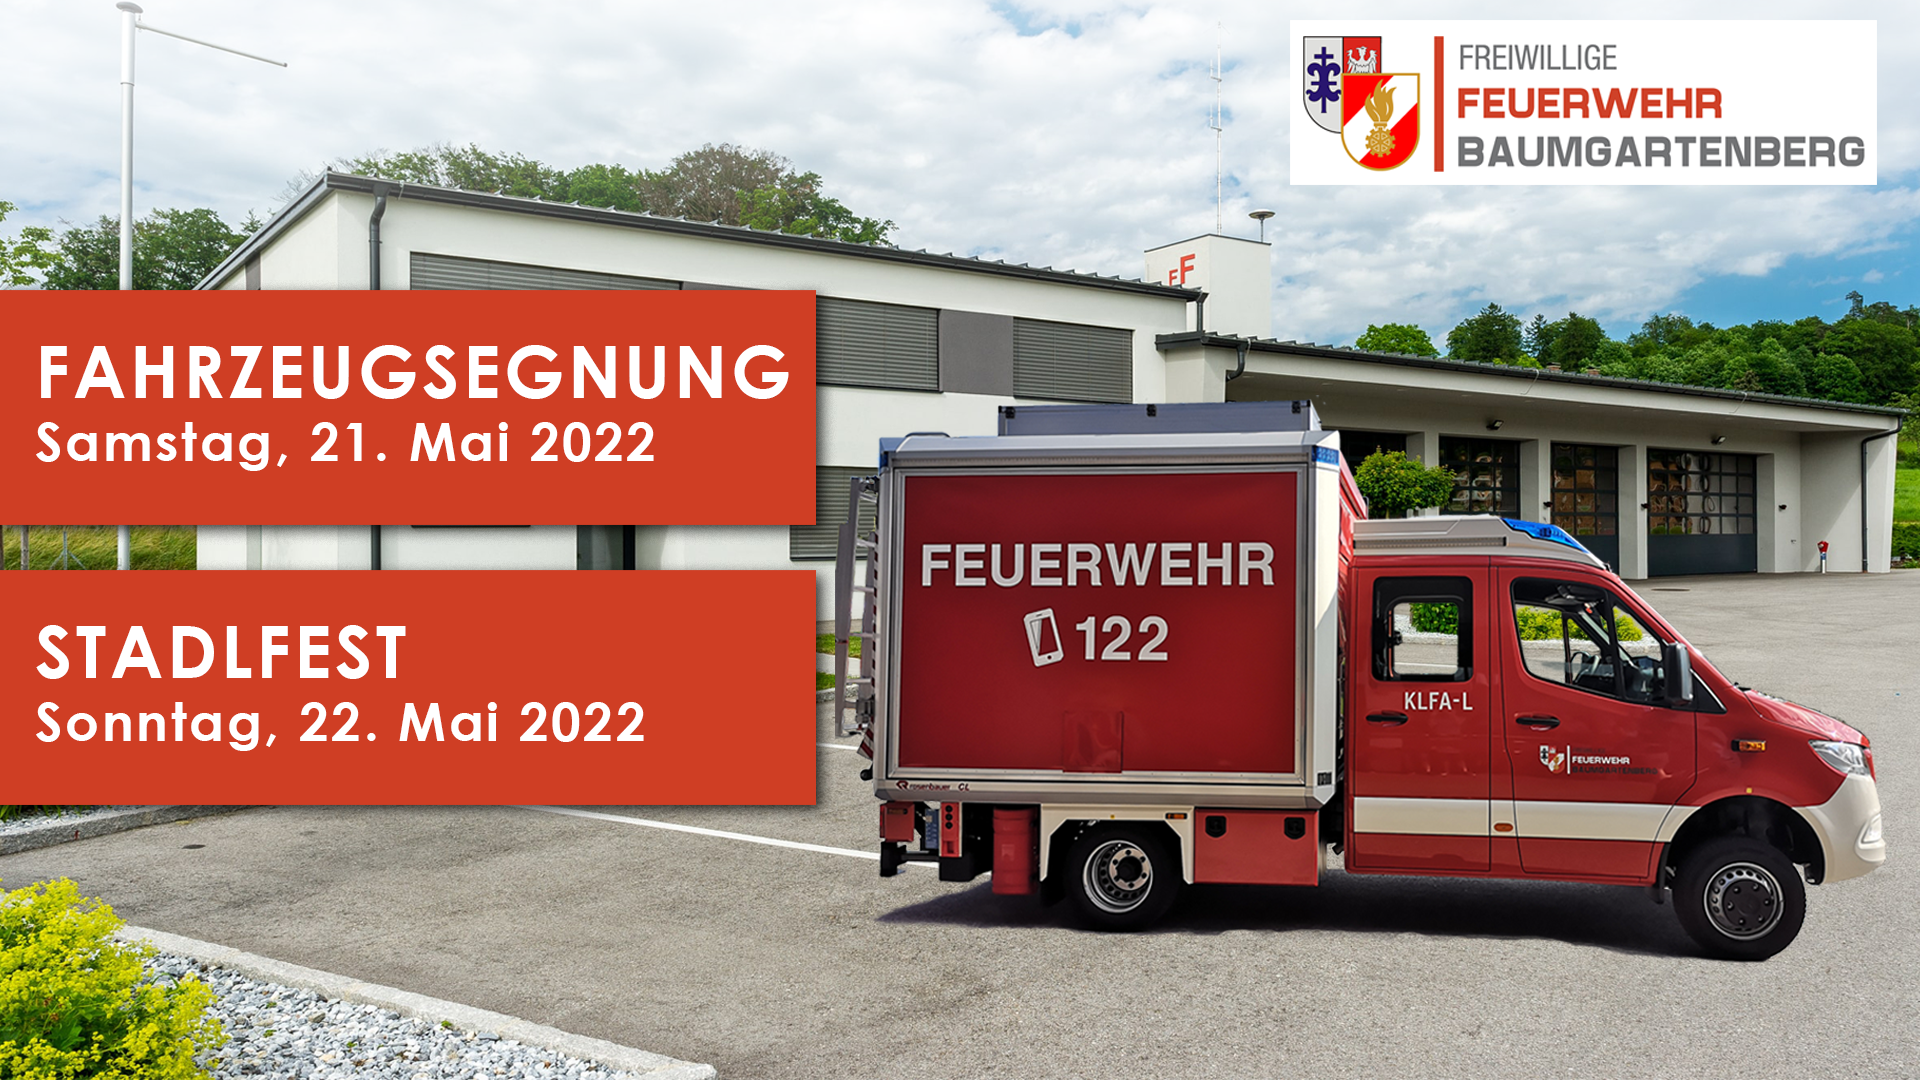 Die Freiwillige Feuerwehr Baumgartenberg lädt am Samstag, 21. Mai herzlich zur Fahrzeugweihe des KLFA-L und STROMA sowie am Sonntag, 22. Mai zum traditionellen Stadlfest-Frühschoppen im Marktstadl ein!